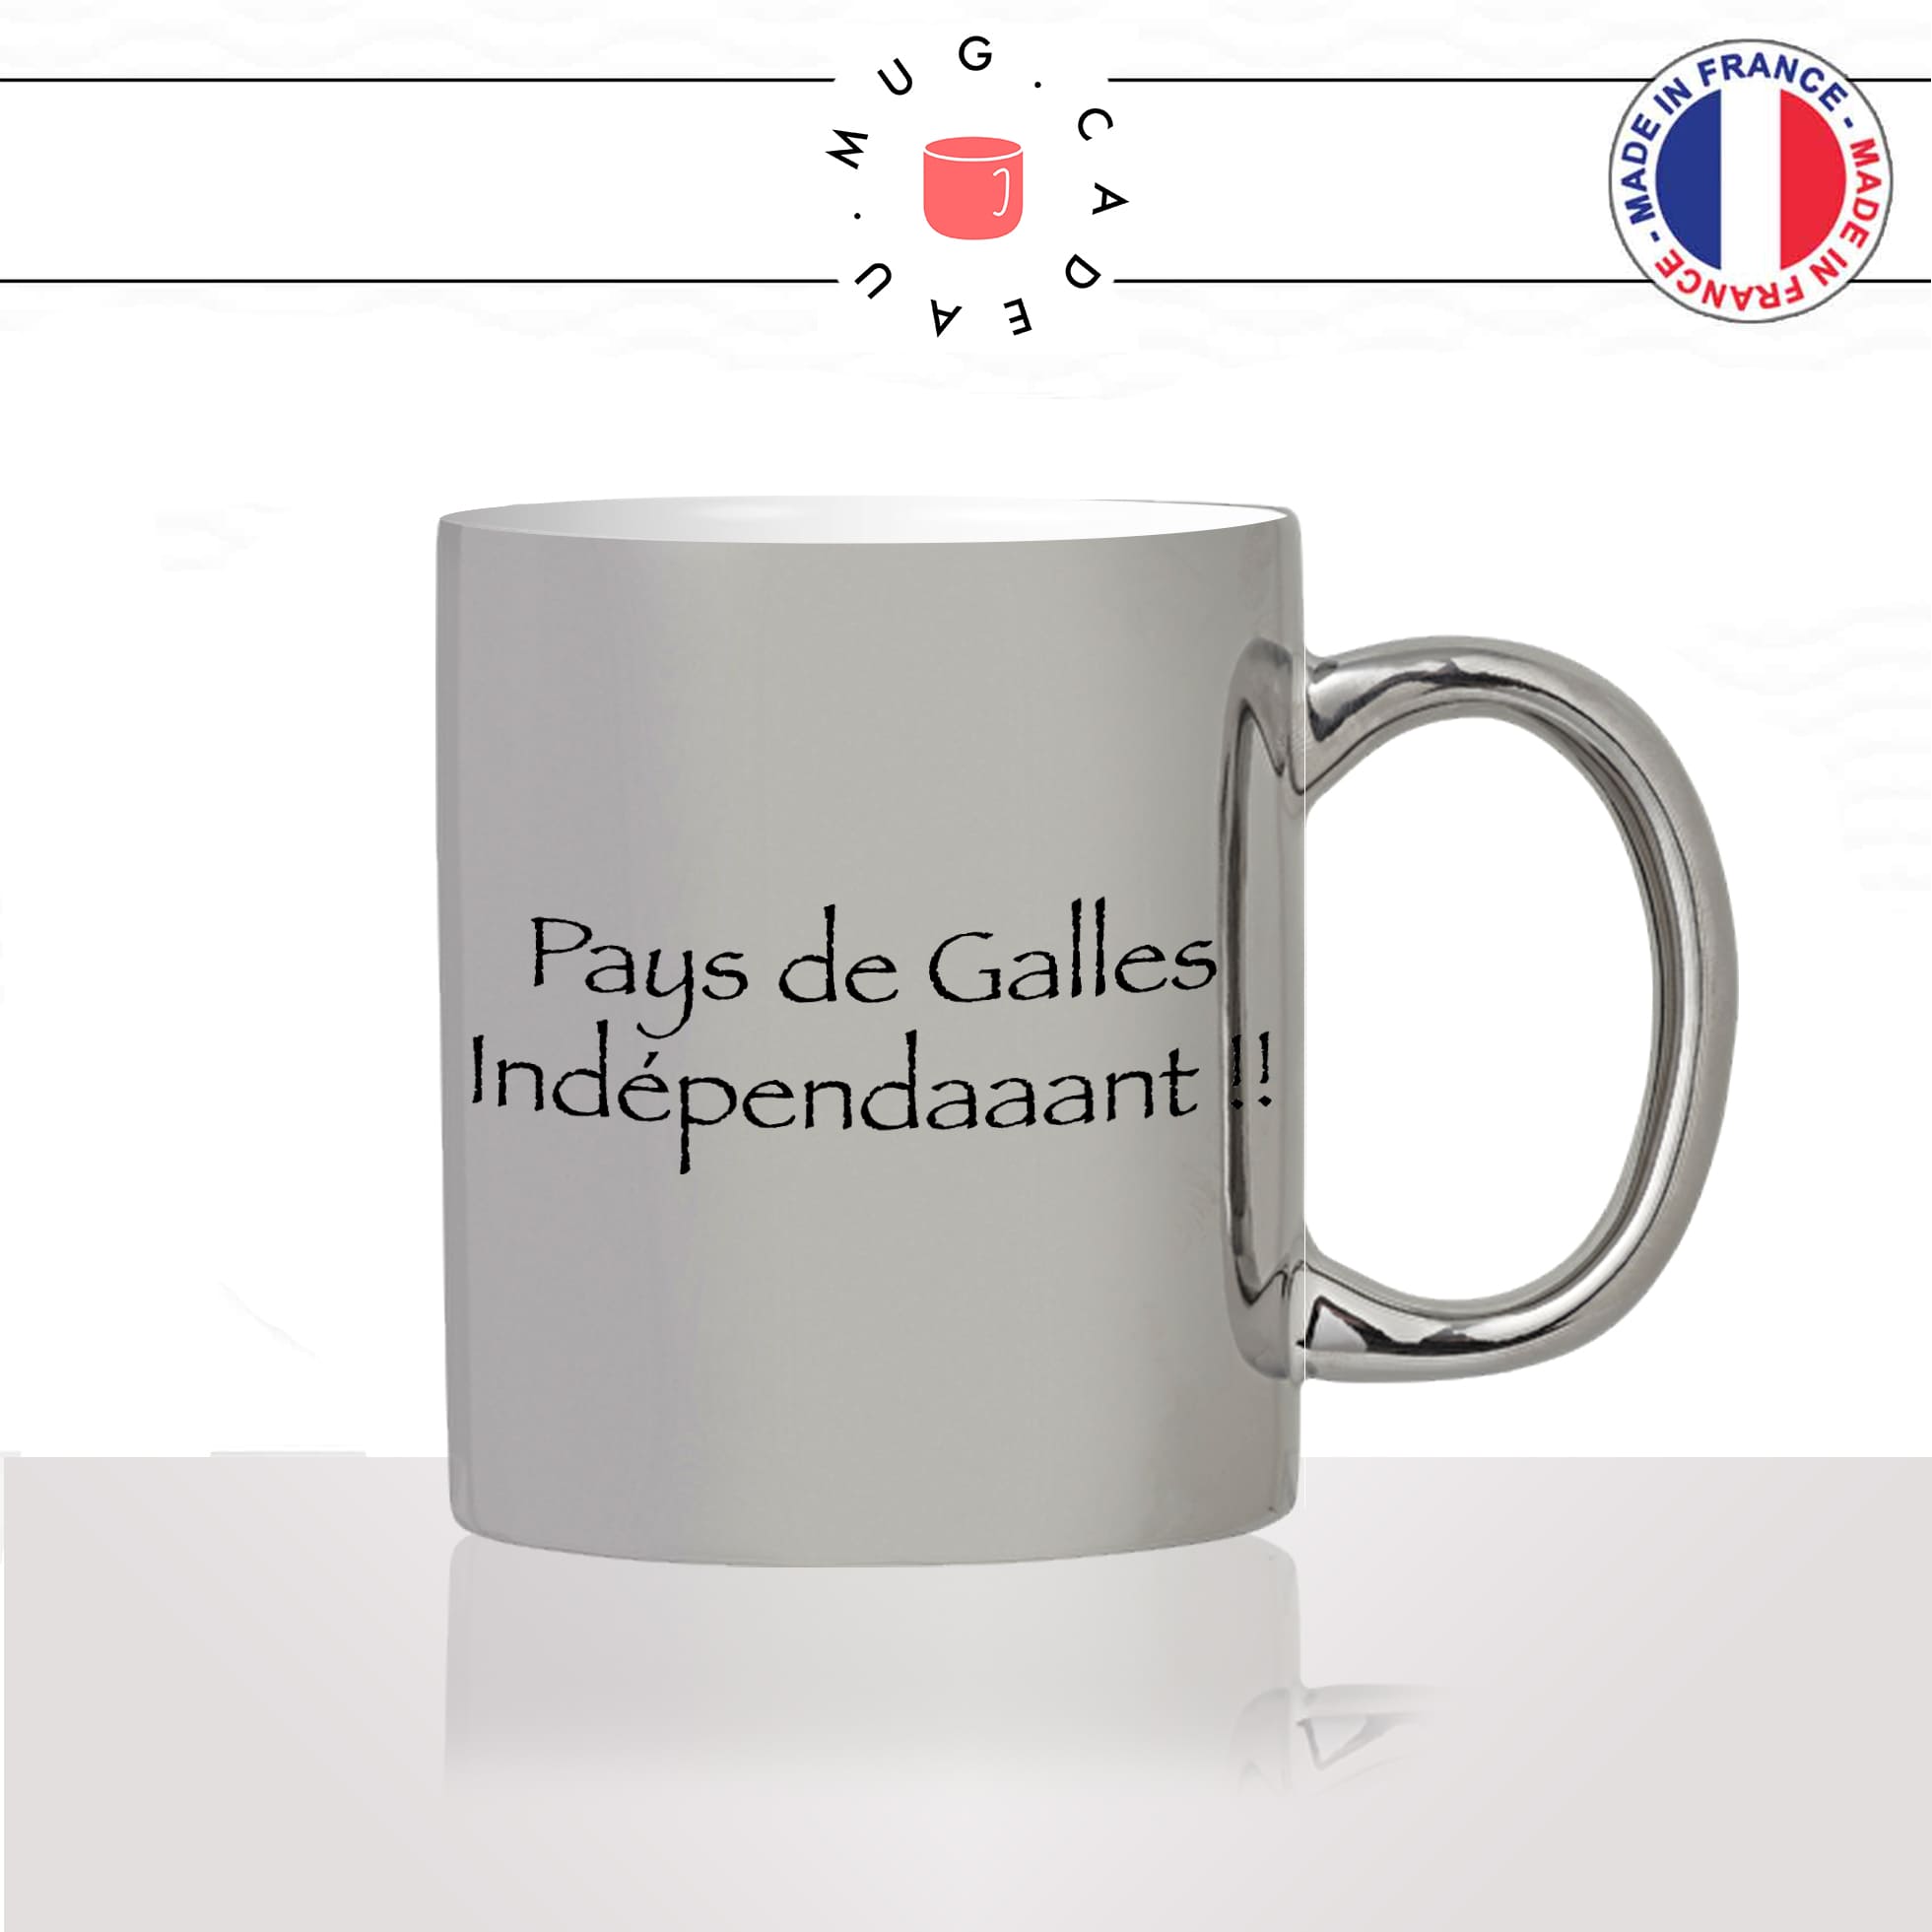 mug-tasse-argent-argenté-silver-série-francaise-culte-kaamelott-arthur-pays-de-galles-independant-perceval-idée-cadeau-fun-cool-café-thé2